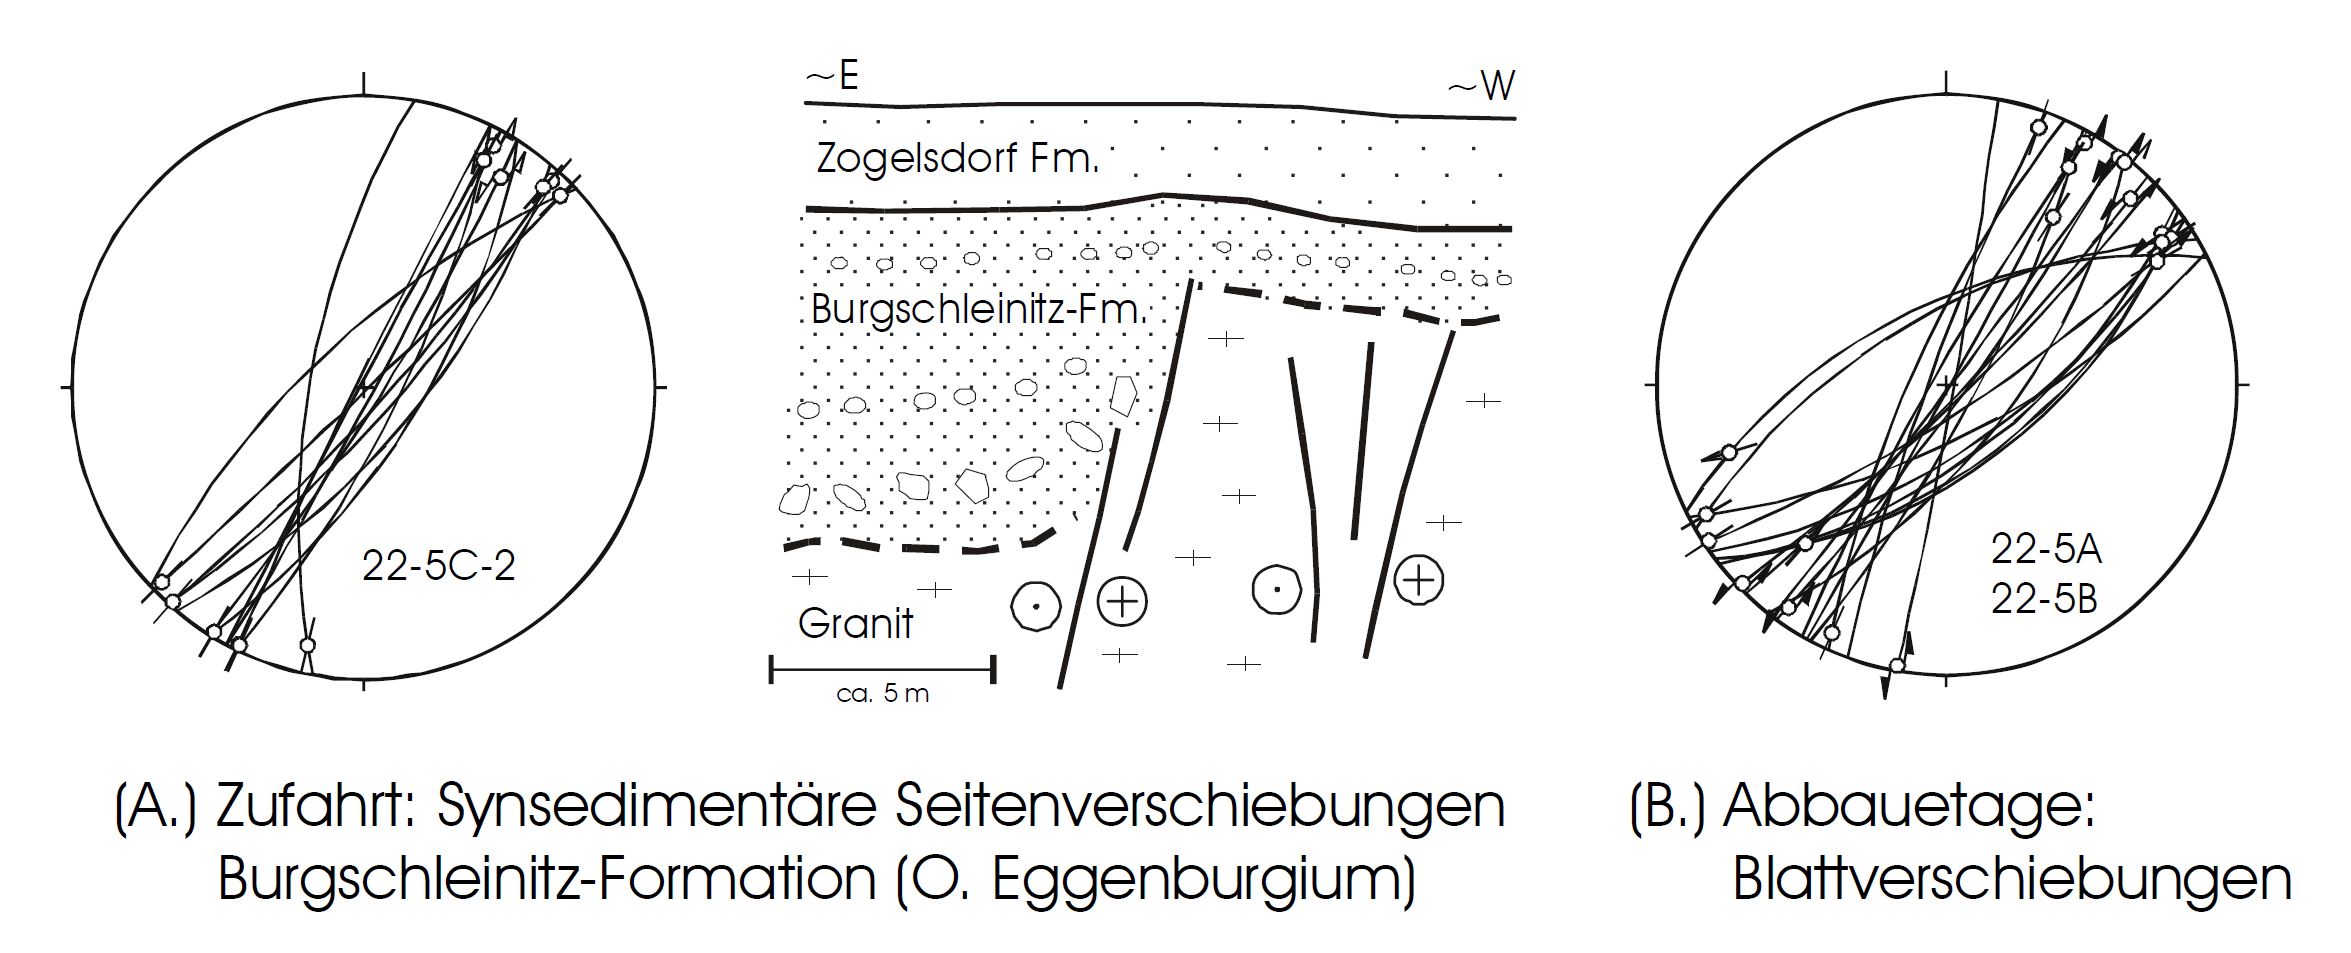 Fault structures in Hengel quarry (Decker 1999).